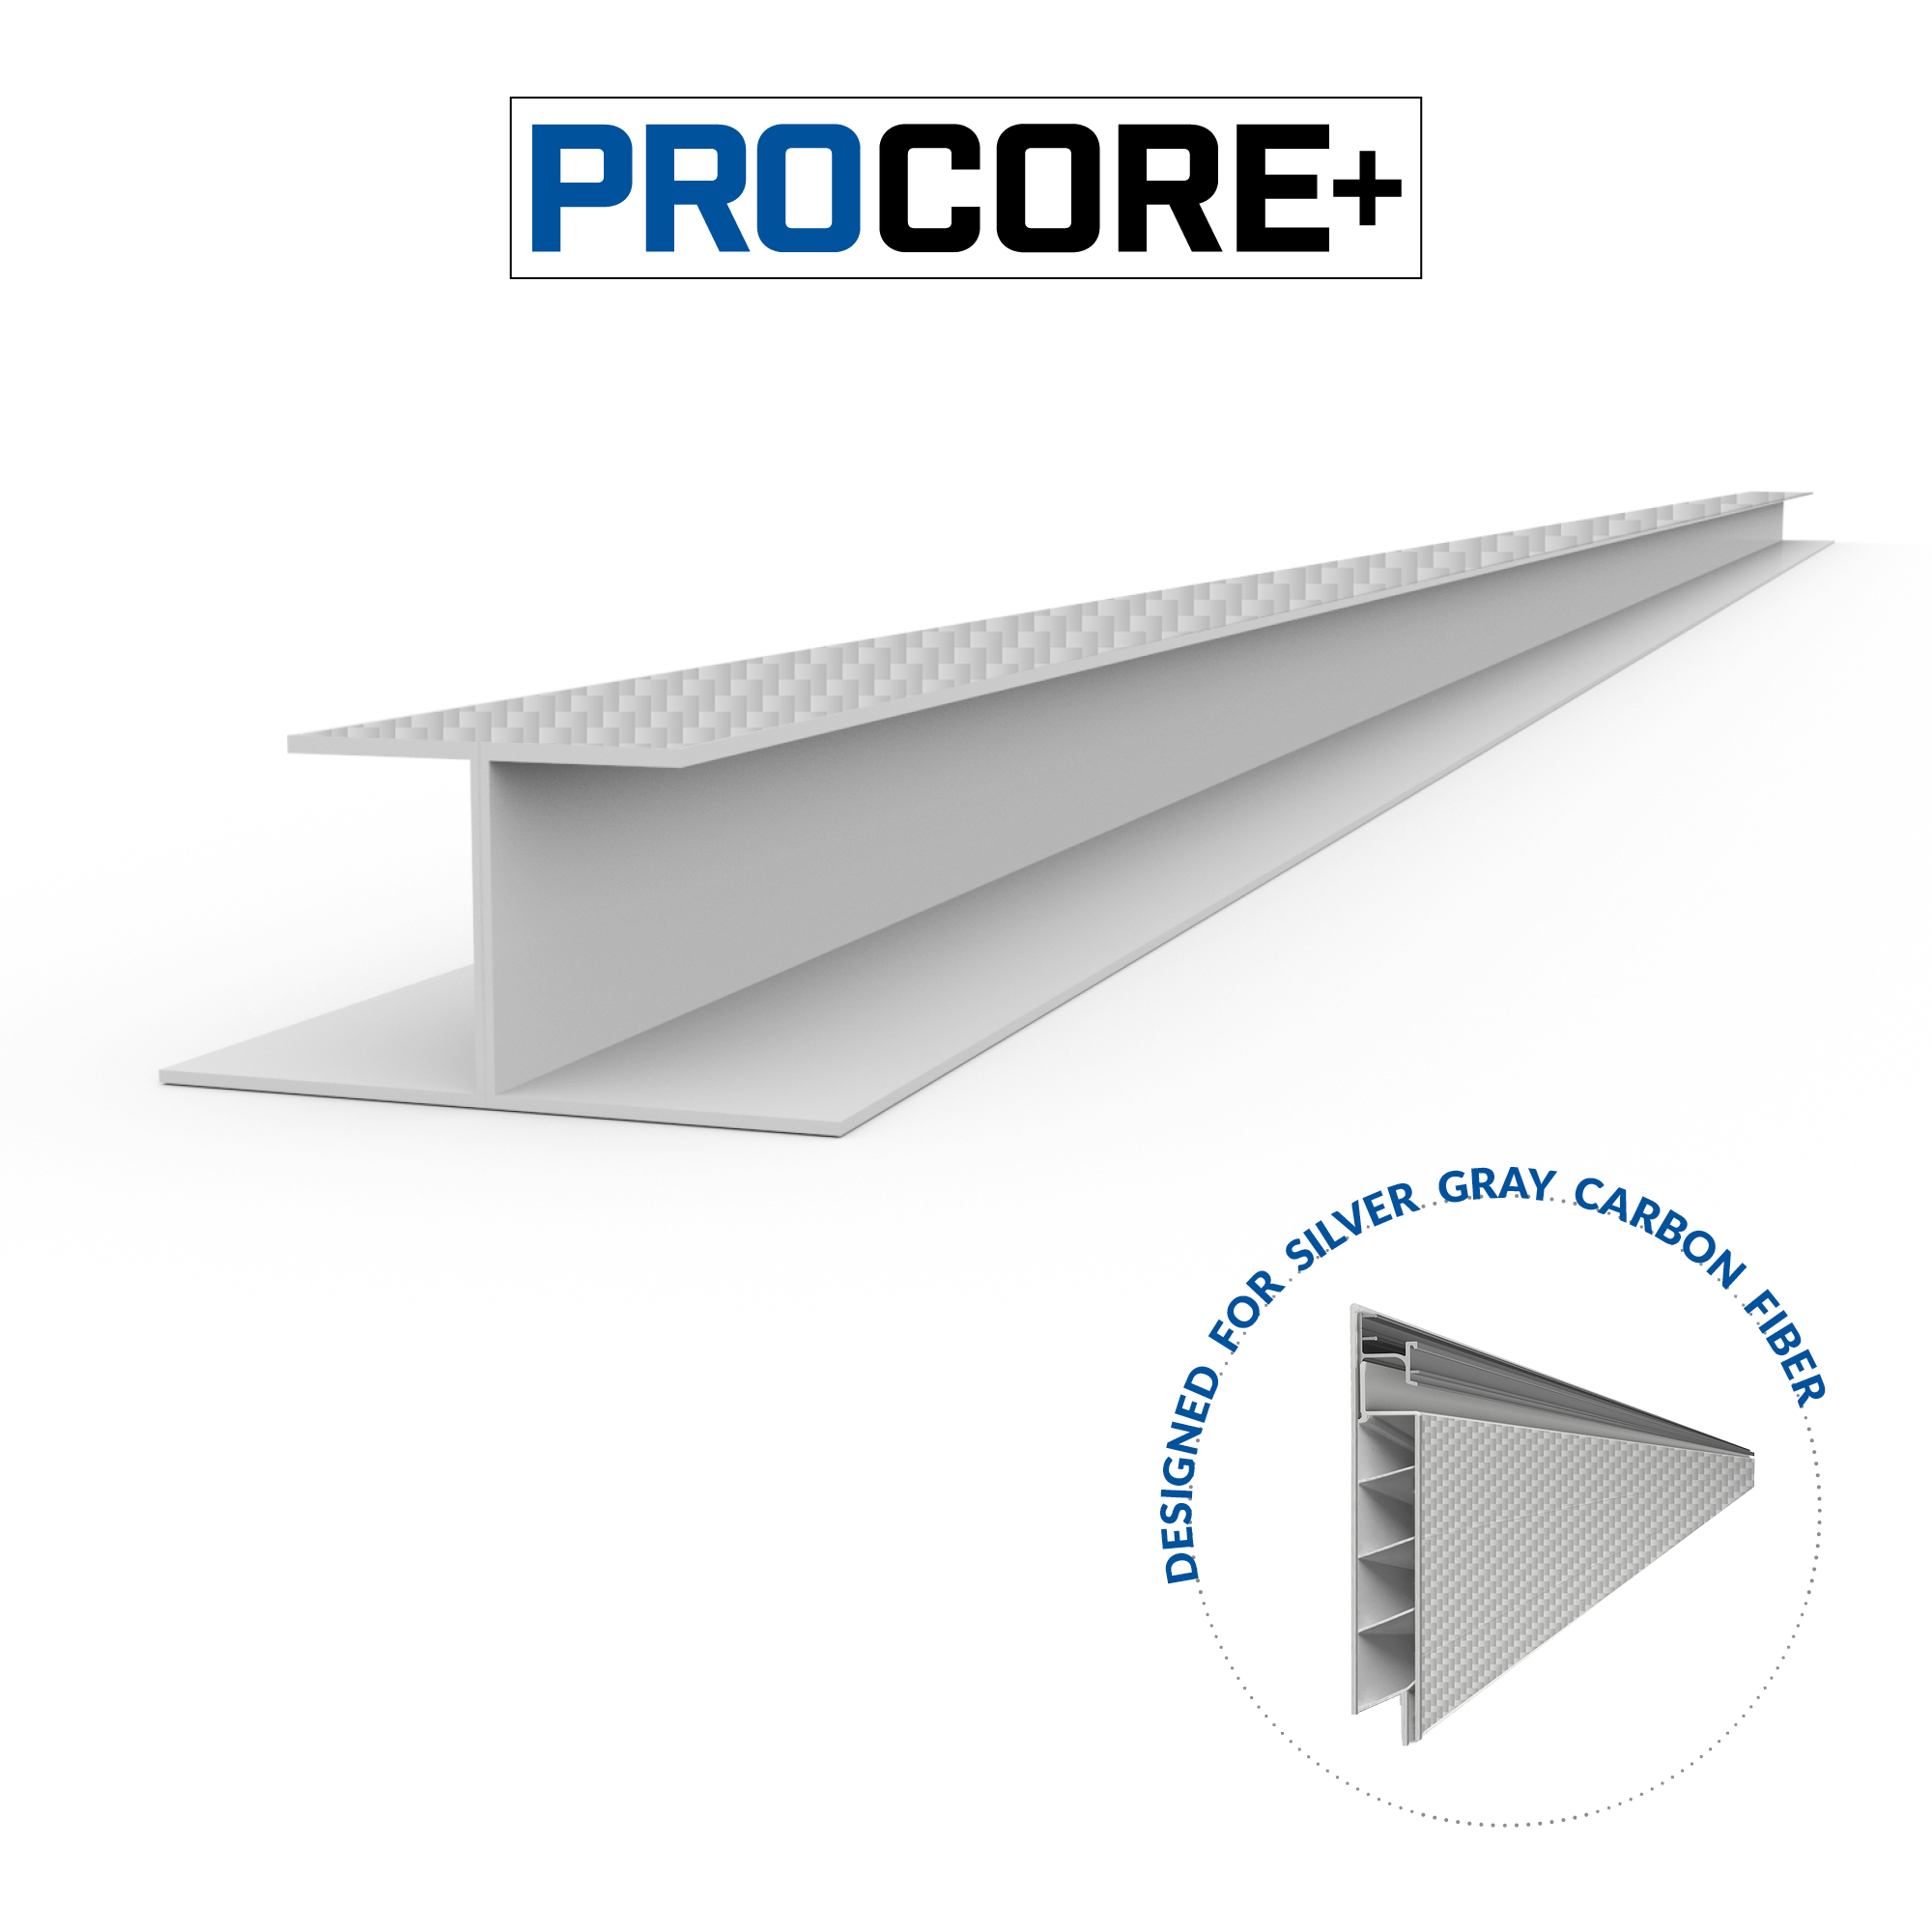 4 ft. PROCORE+ Silver gray carbon fiber PVC H-Trim